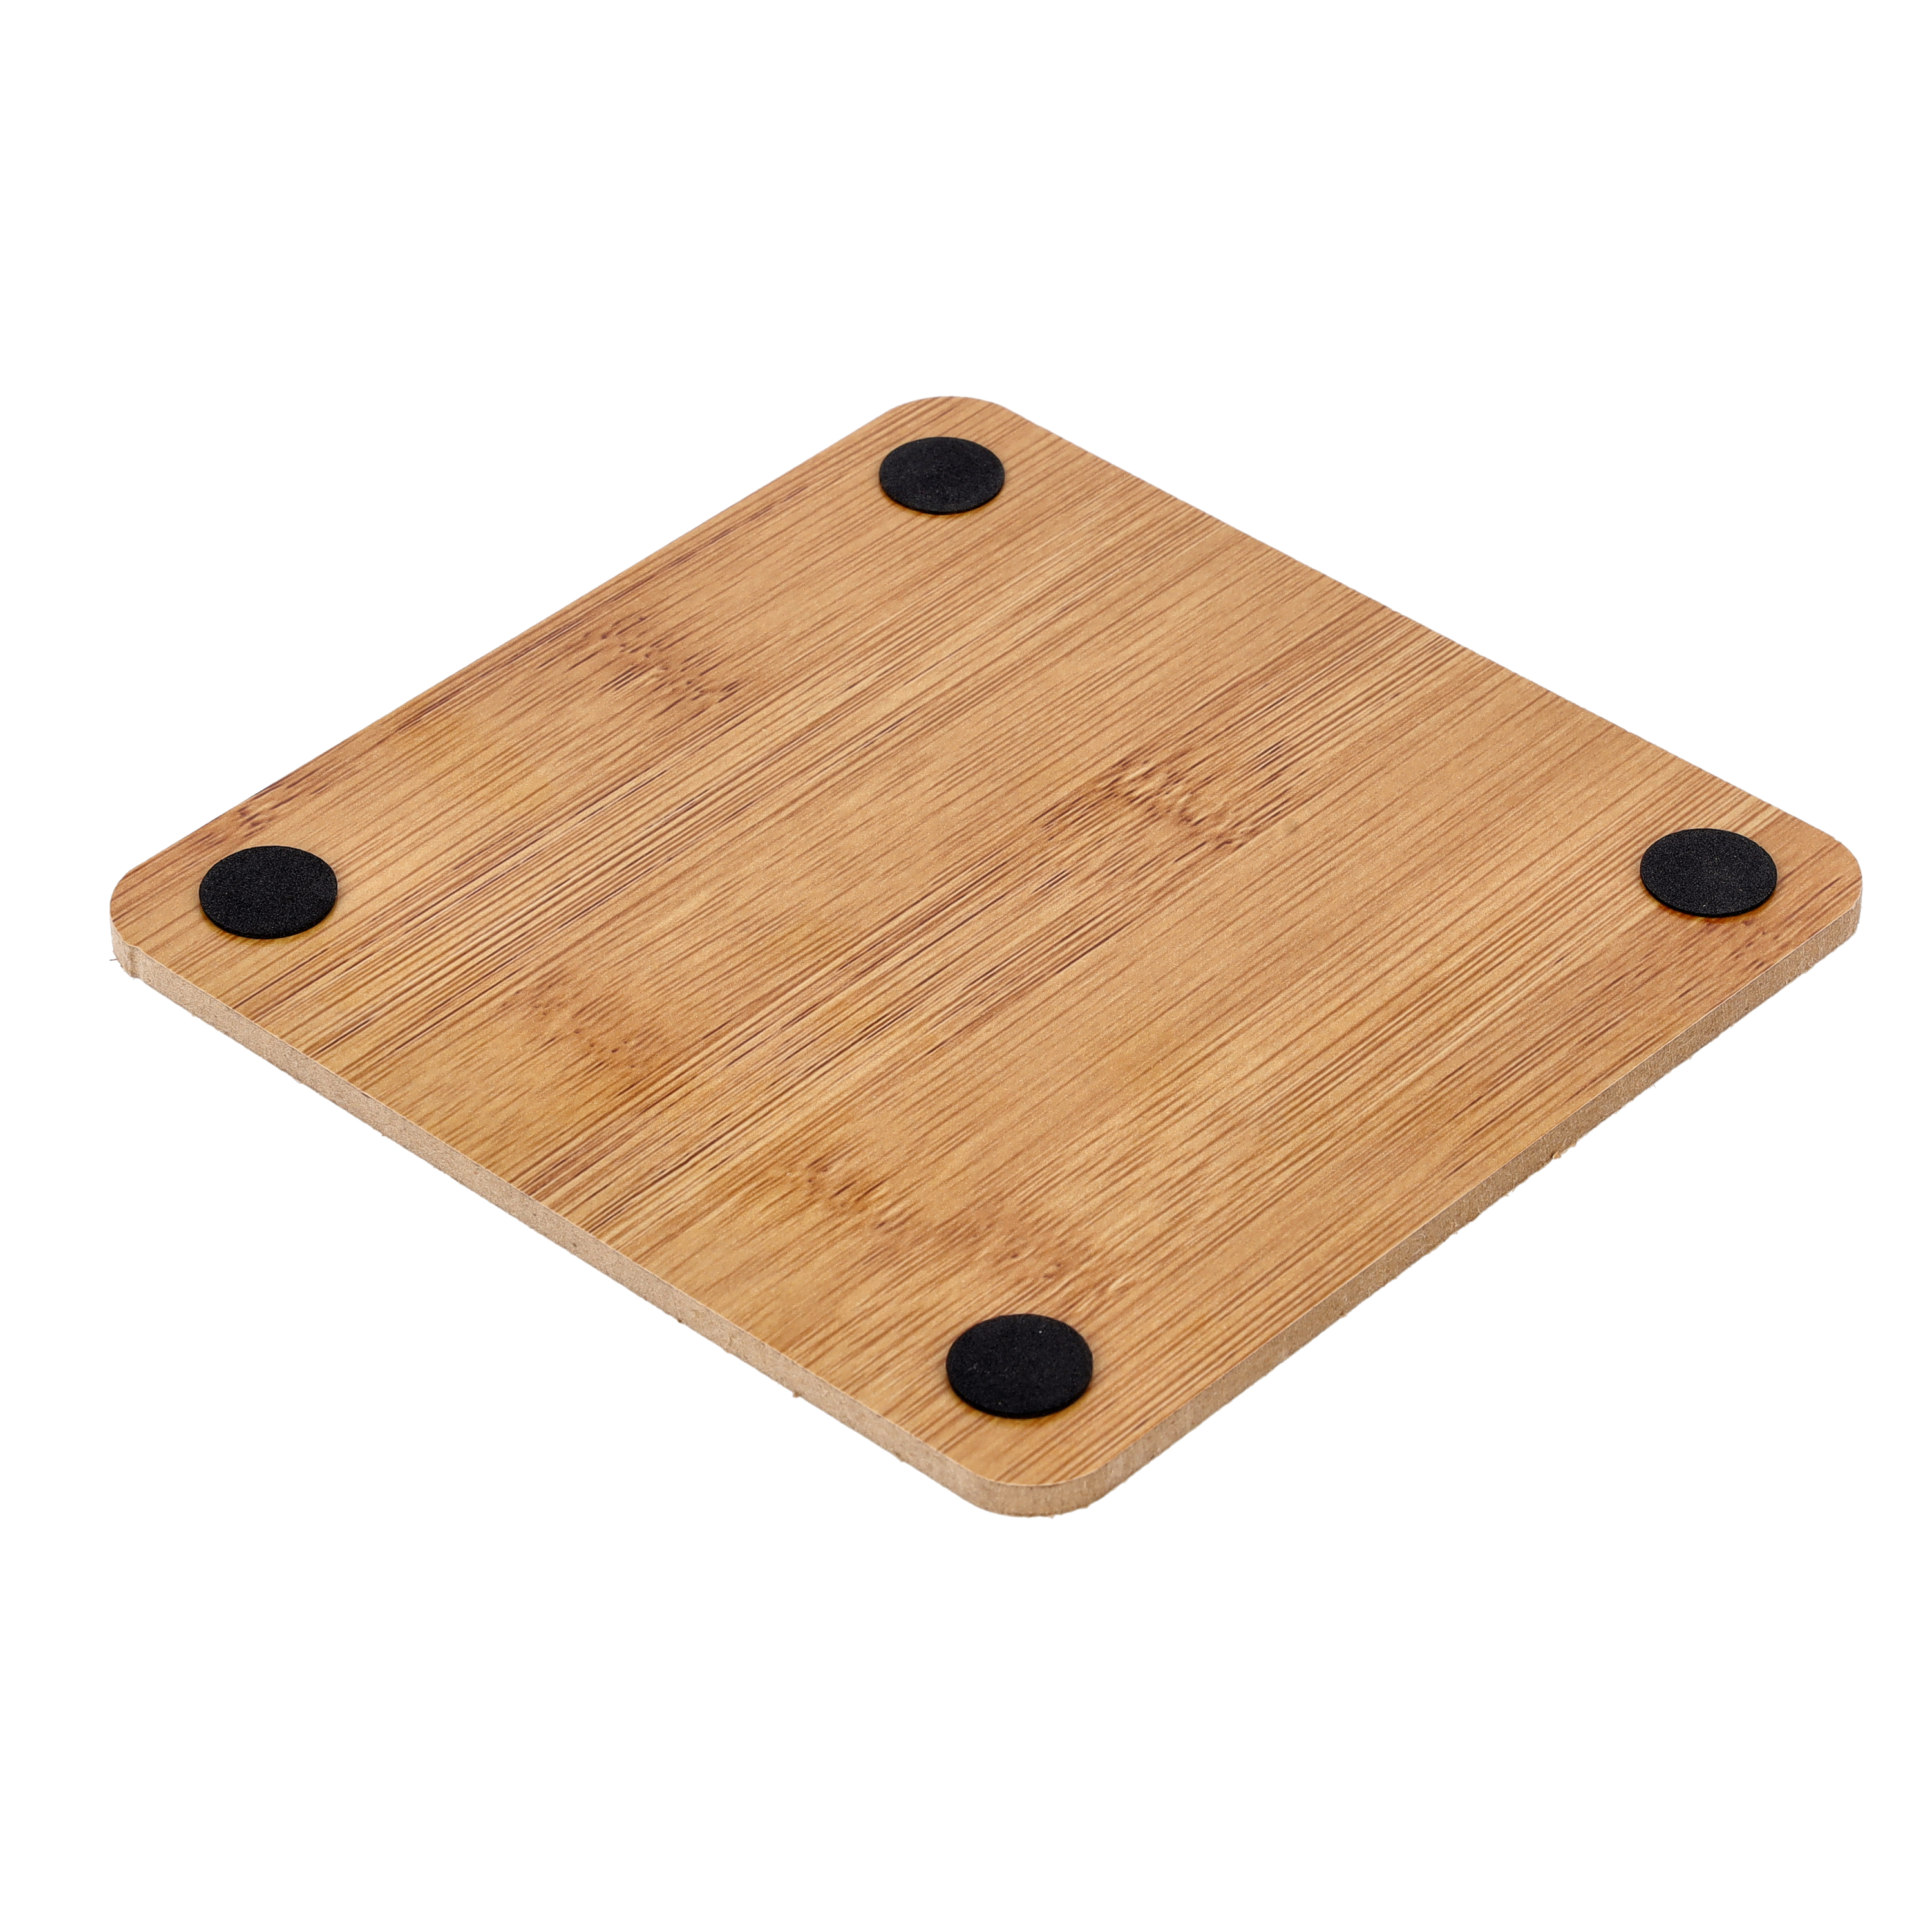 Wooden Nonslip Heat Pad For Kitchen